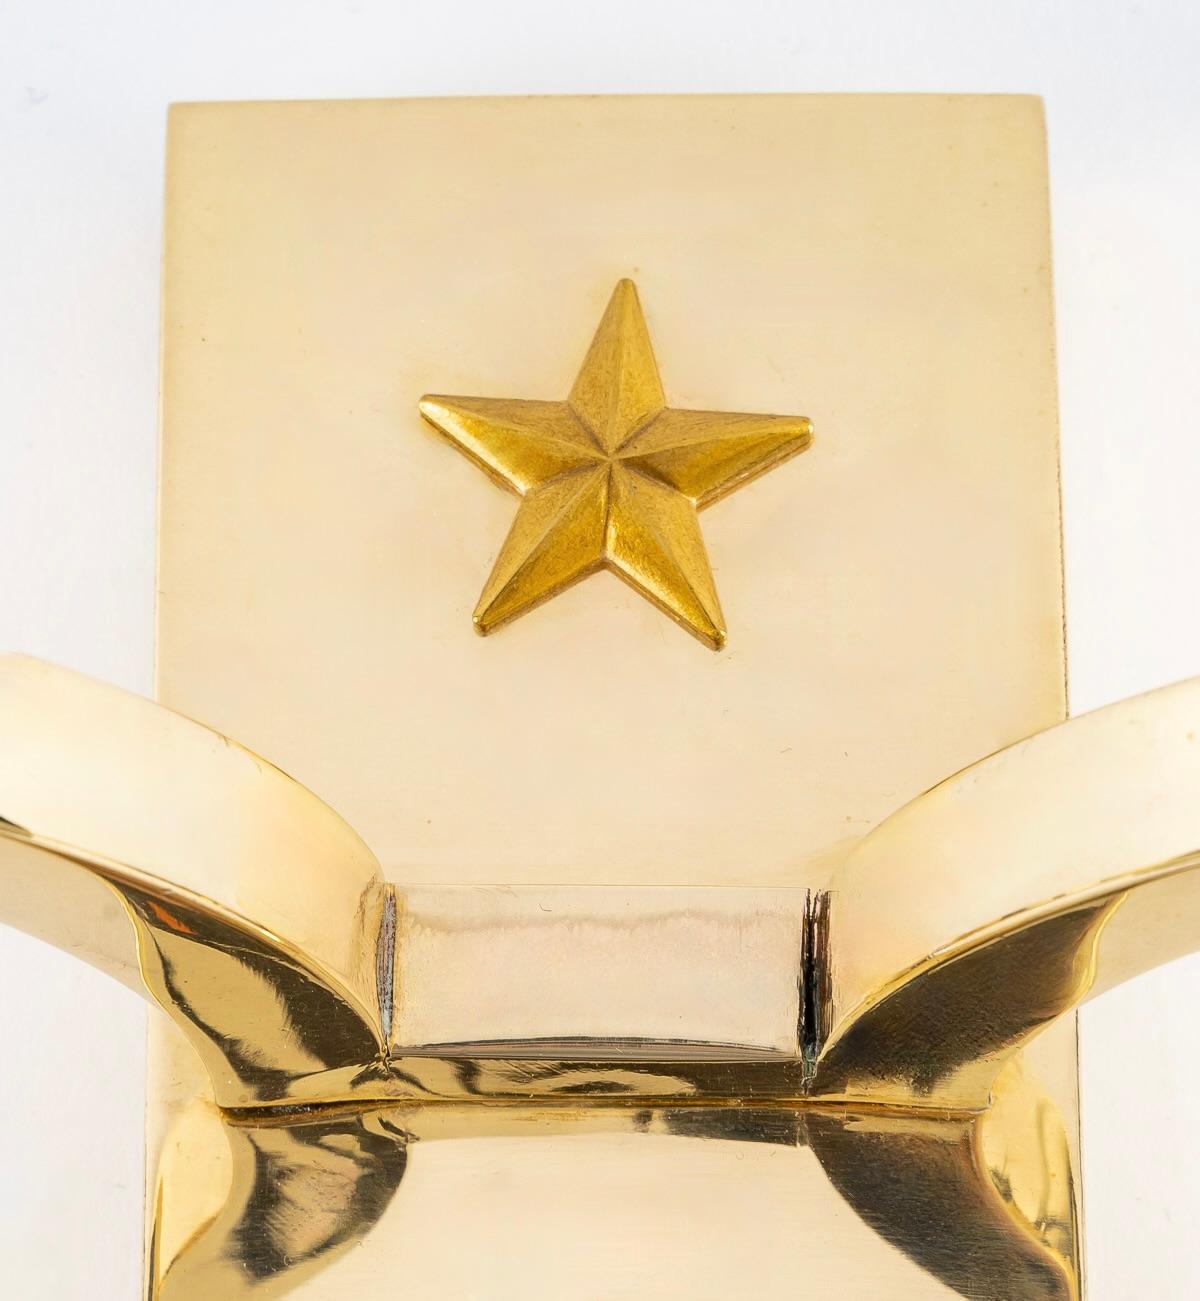 Composée d'une plaque murale en laiton doré de forme rectangulaire, elle est décorée de deux étoiles réparties sur le haut et le bas de l'applique.
Deux bras de lumière placés au centre de chaque côté de l'applique sont habillés d'abat-jour